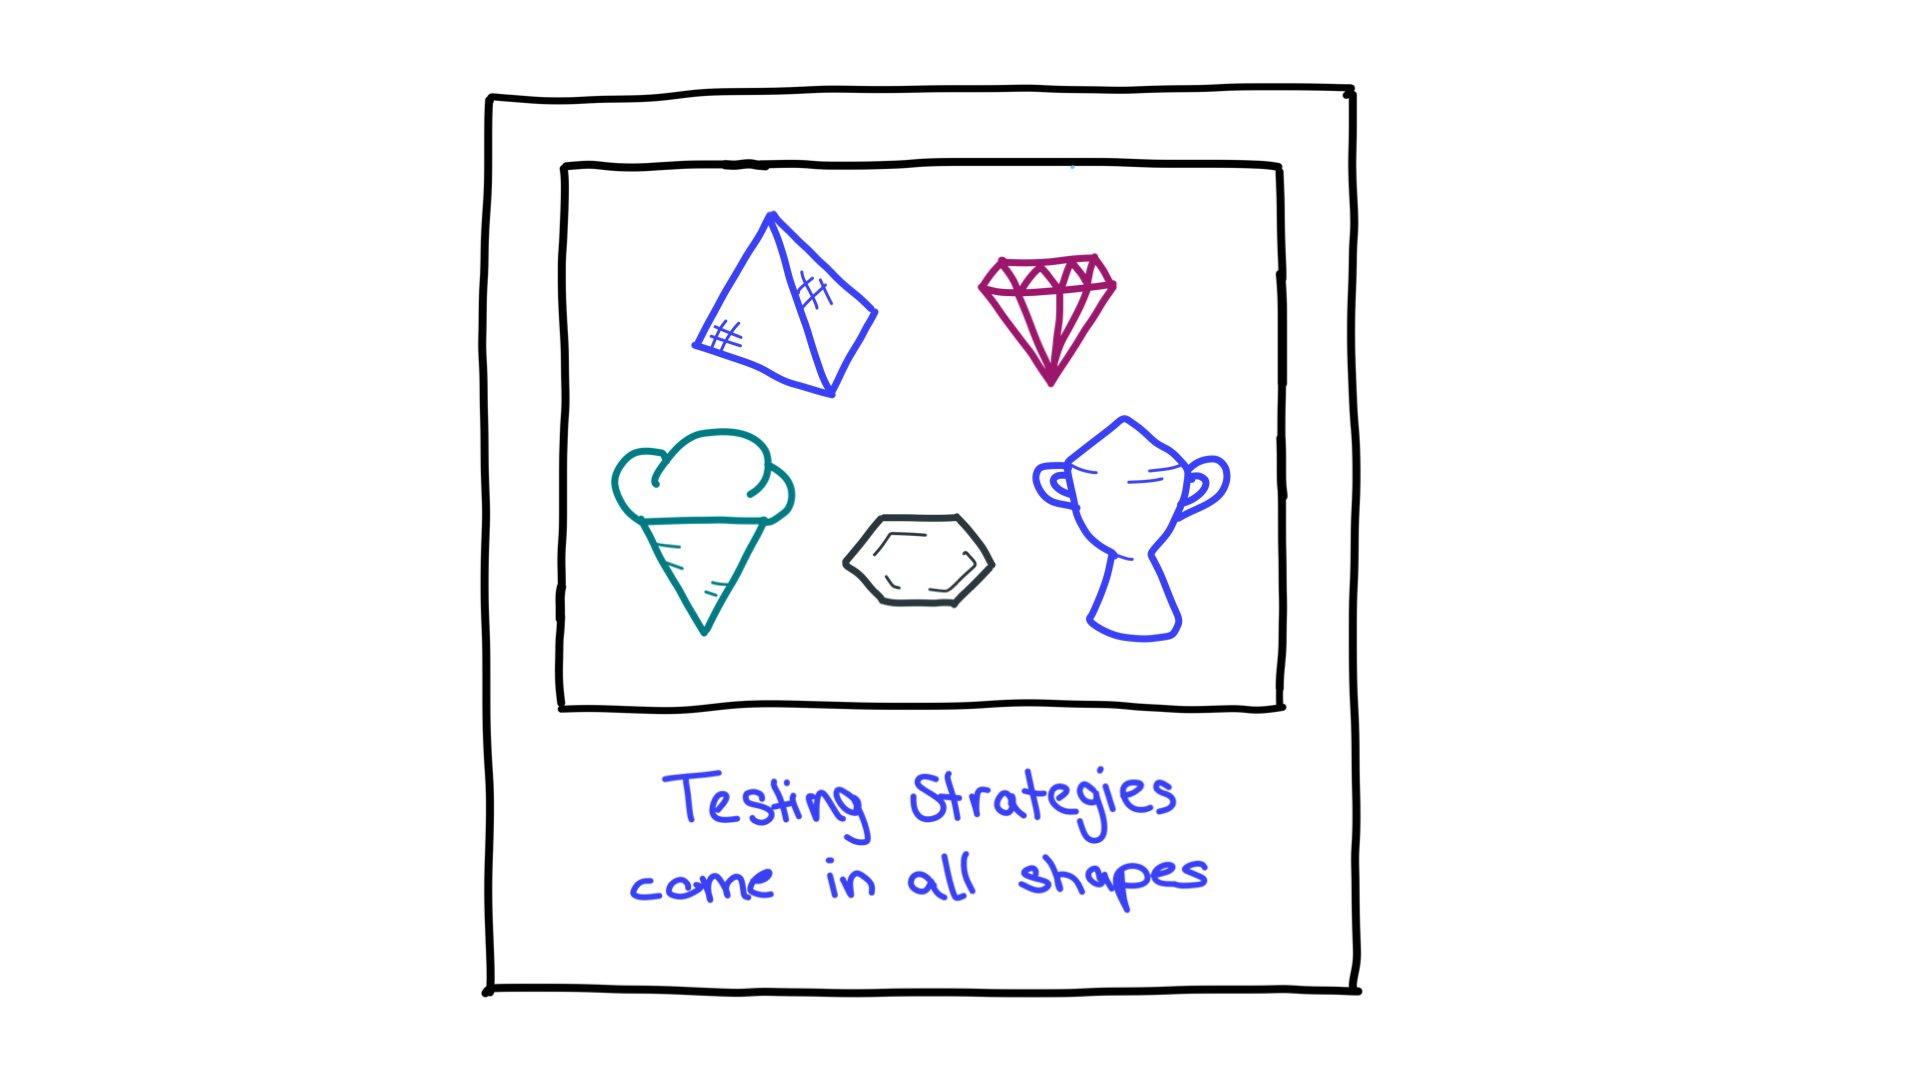 Alcuni esempi di forme di strategia di test: una piramide, un diamante taglio, un cono gelato, un esagono e un trofeo.